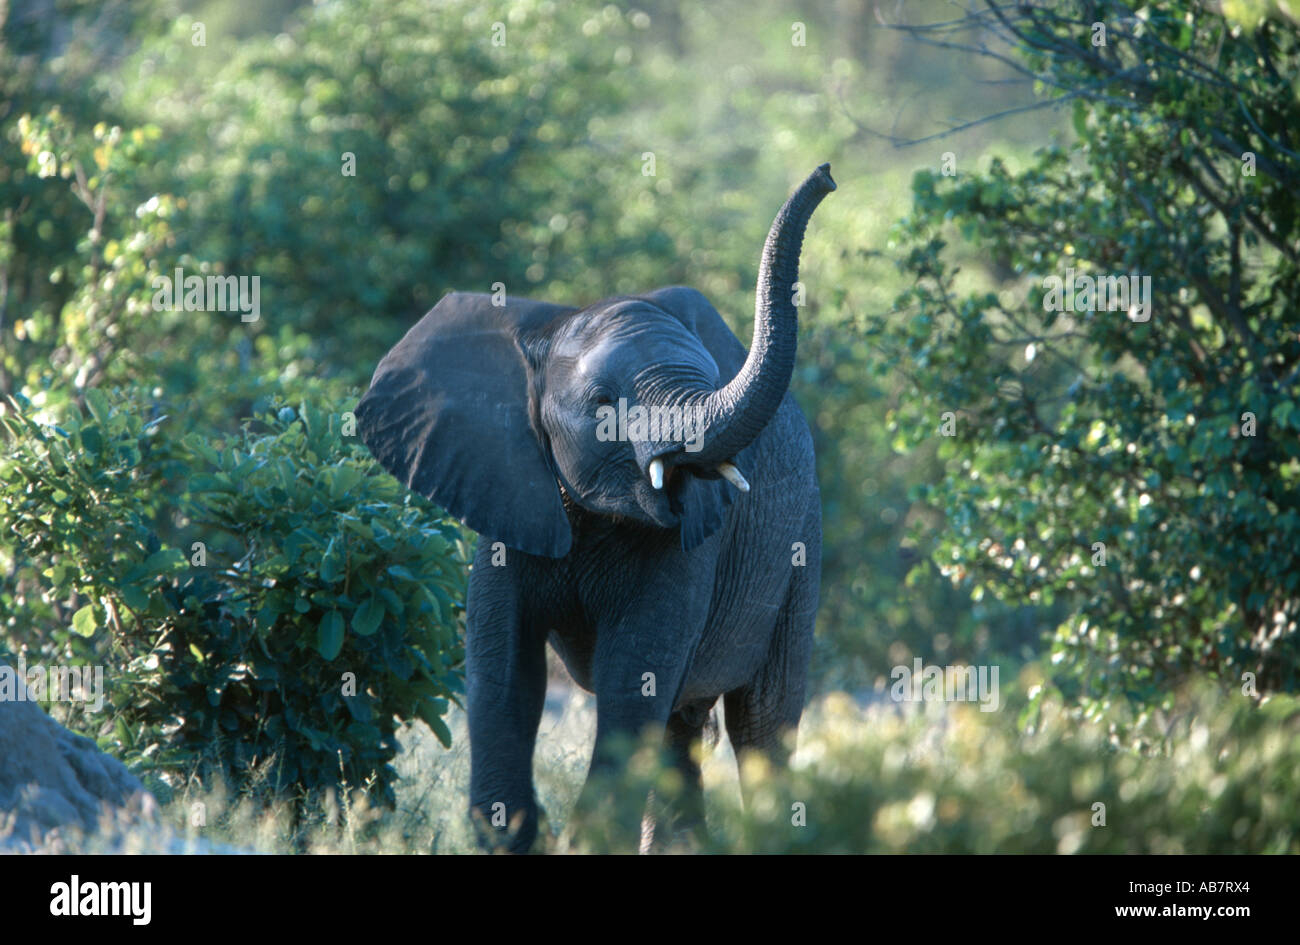 African elephant (Loxodonta africana), juvenile, Botswana Stock Photo